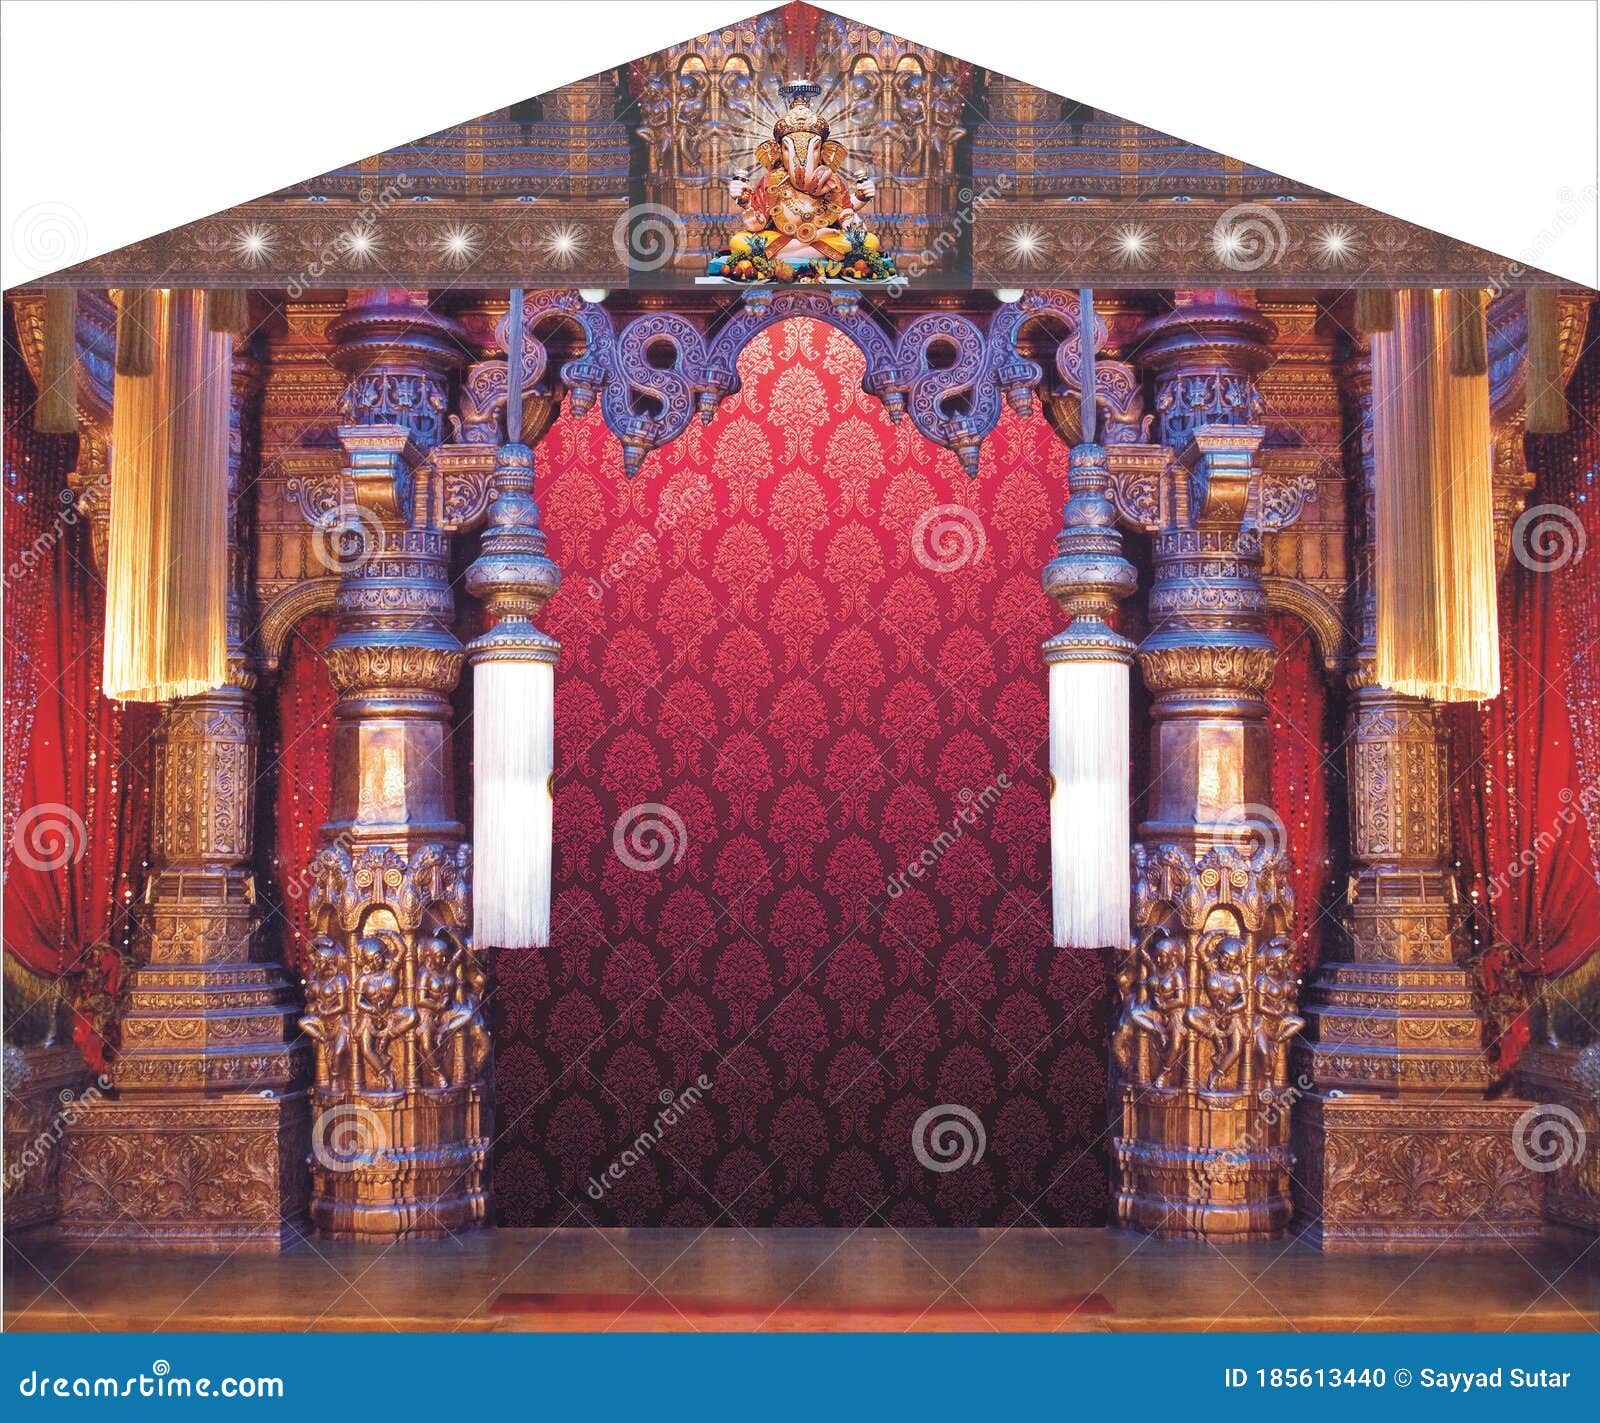 Ganesha Festival in India Lord Ganesha Decoration Stock Photo - Image of  decoration, background: 185613440